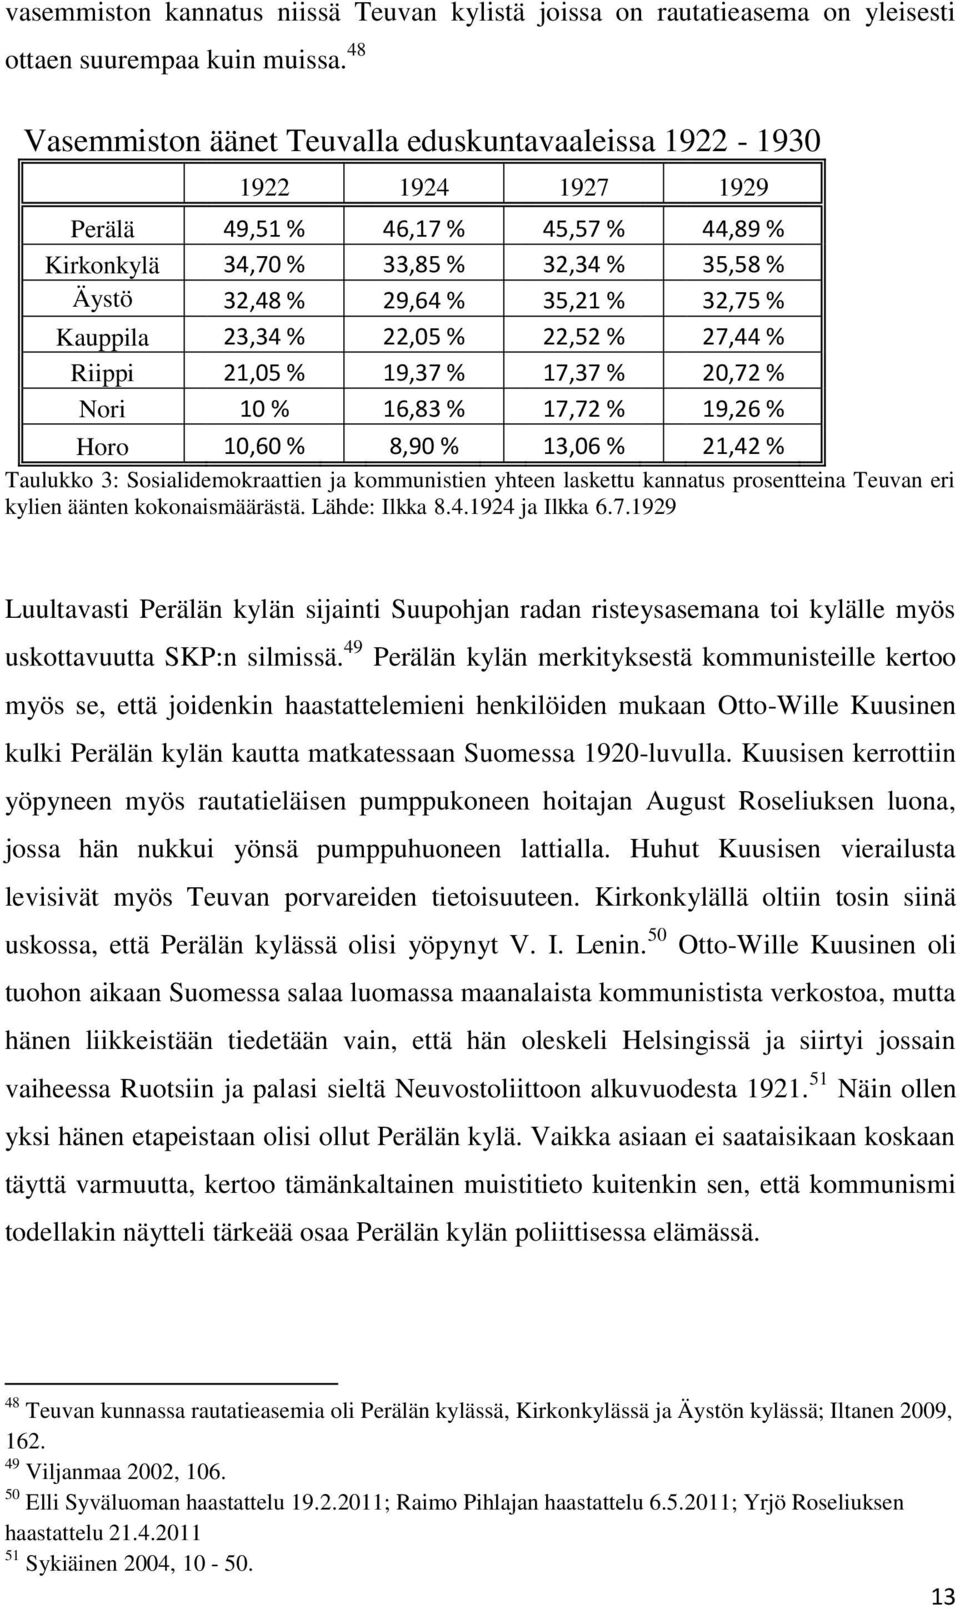 Kauppila 23,34 % 22,05 % 22,52 % 27,44 % Riippi 21,05 % 19,37 % 17,37 % 20,72 % Nori 10 % 16,83 % 17,72 % 19,26 % Horo 10,60 % 8,90 % 13,06 % 21,42 % Taulukko 3: Sosialidemokraattien ja kommunistien